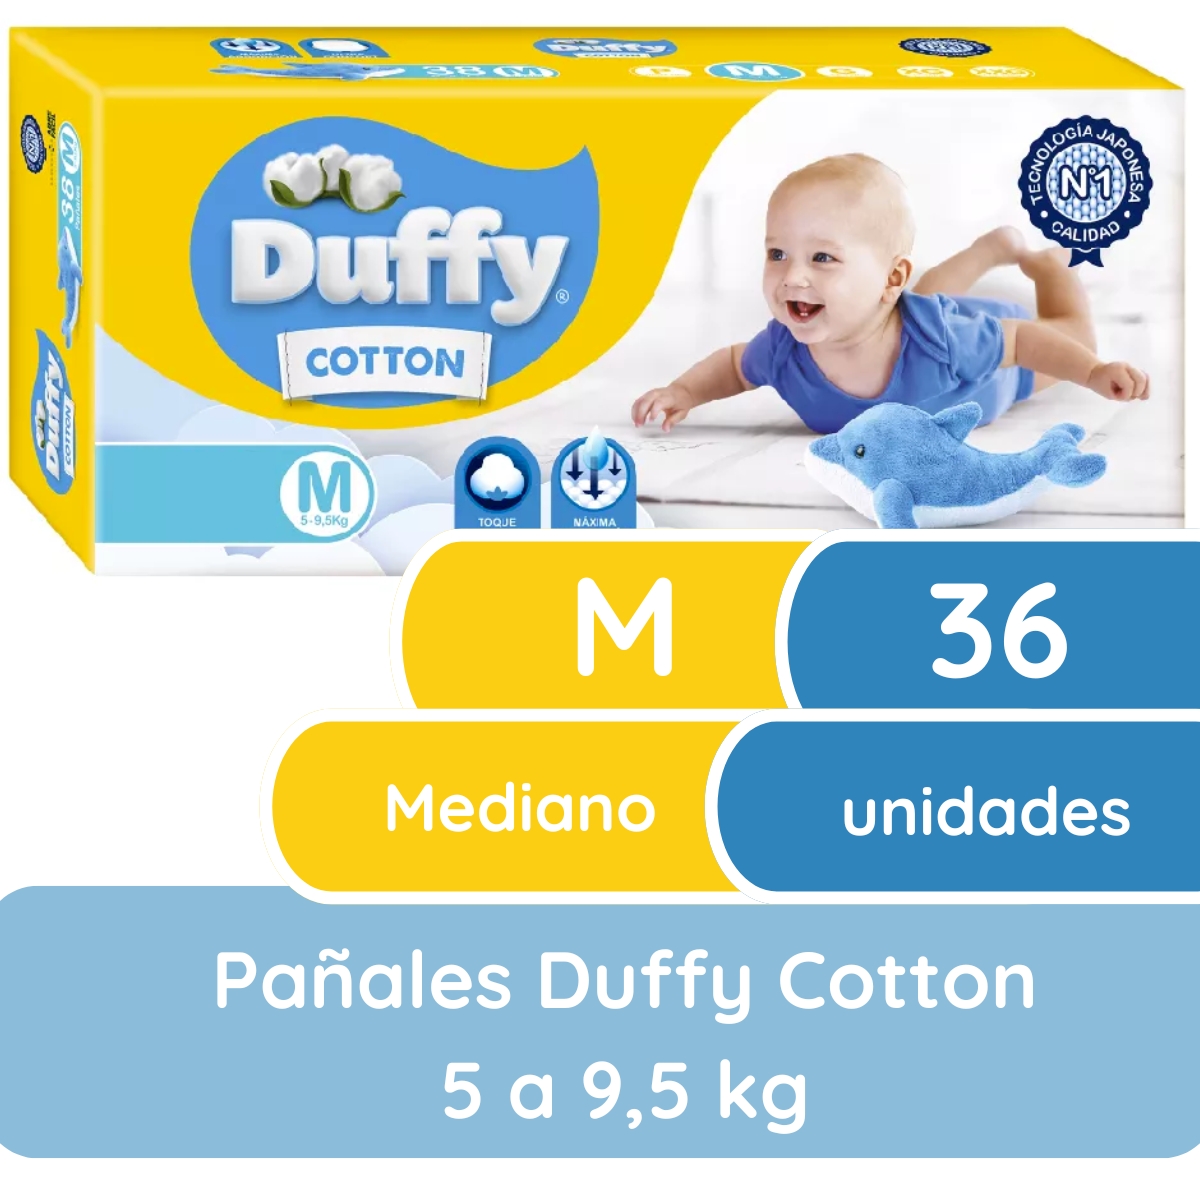 Imagen 1 de 4 de Pañales Duffy Cotton M x 36 unidades